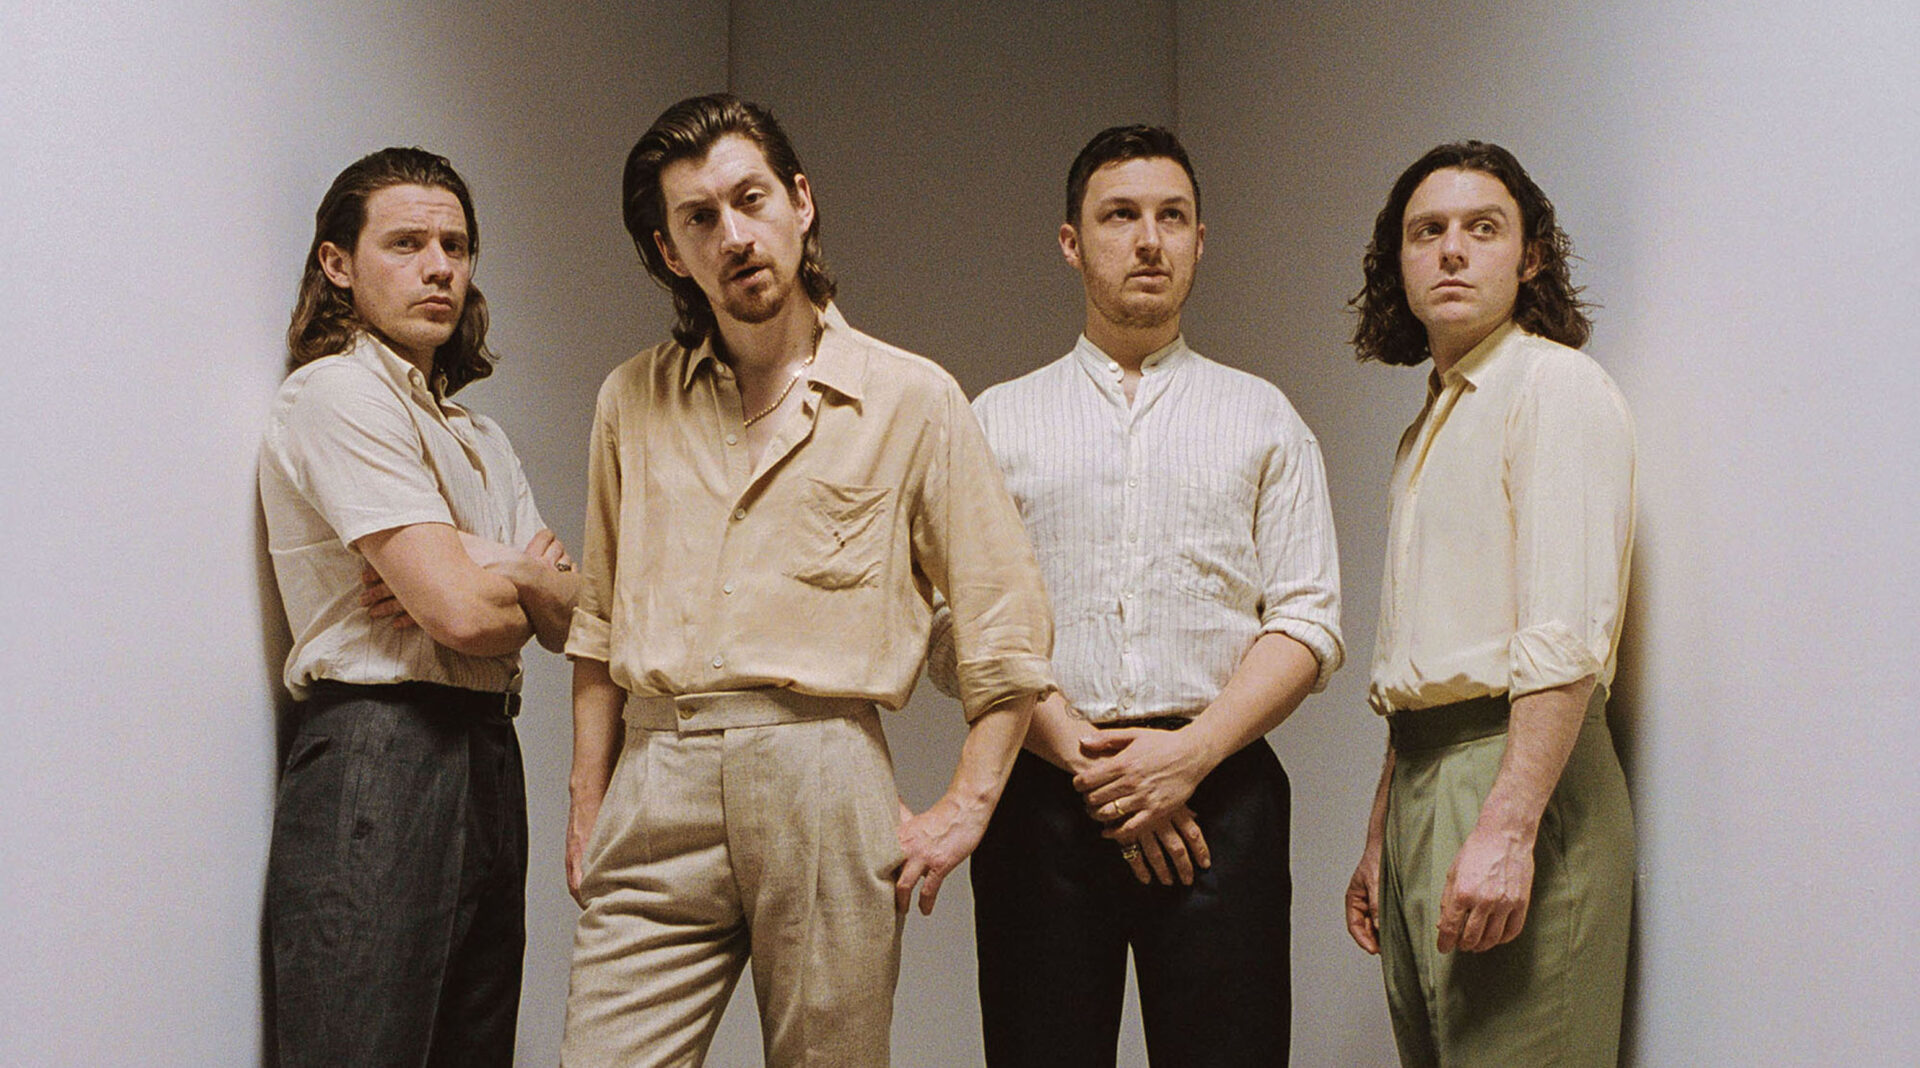 Album Tranquility Base Hotel & Casino không giống với bất kỳ điều gì Arctic Monkey từng thực hiện, nên có thể sẽ lạ lẫm đối với những khán giả trung thành của nhóm.